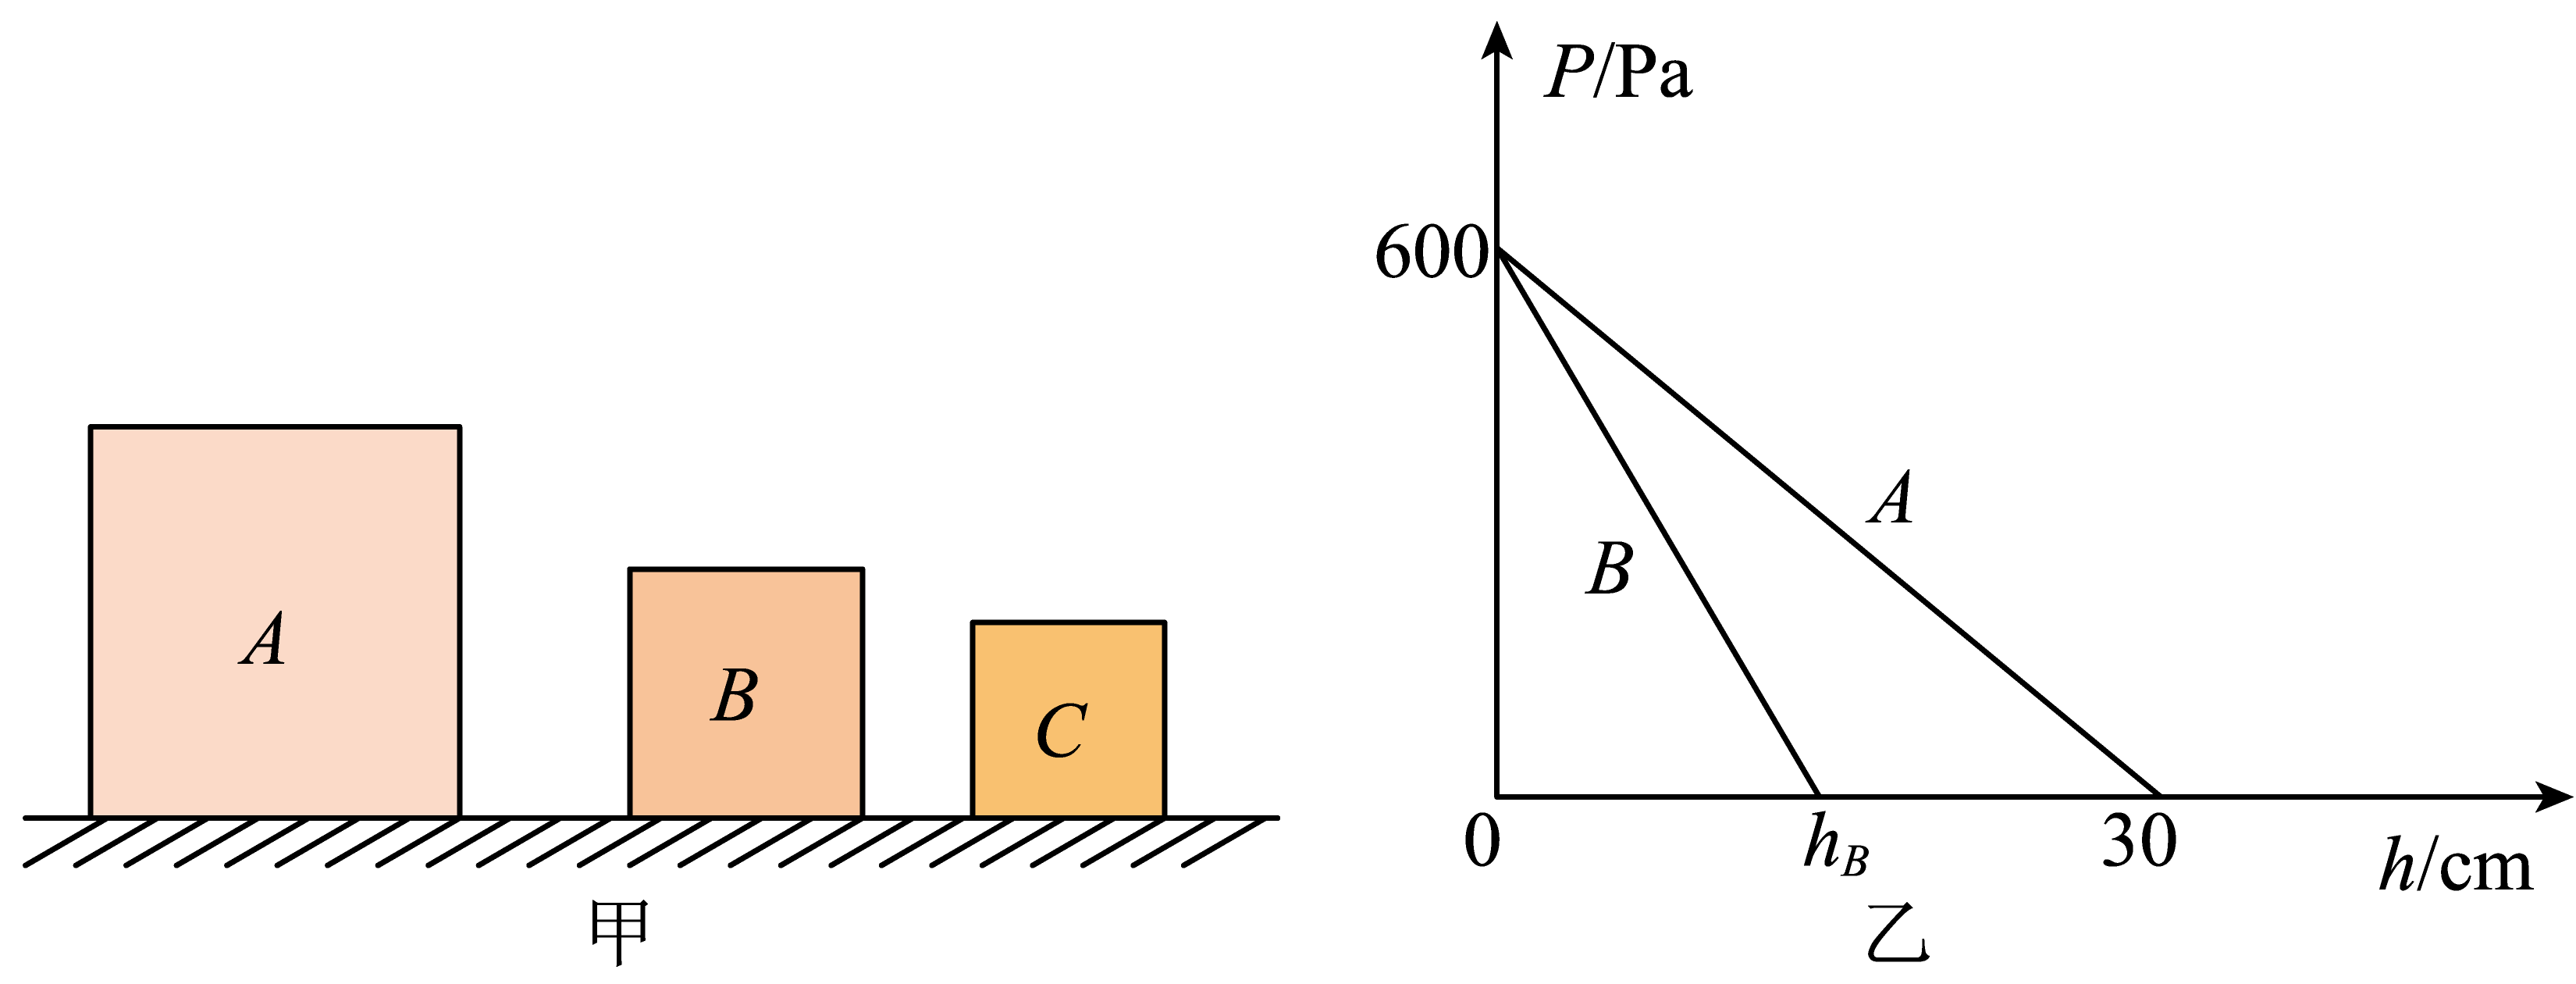 b,c静止放置在水平地面上,且三者对水平地面的压强相等,现将a与b分别